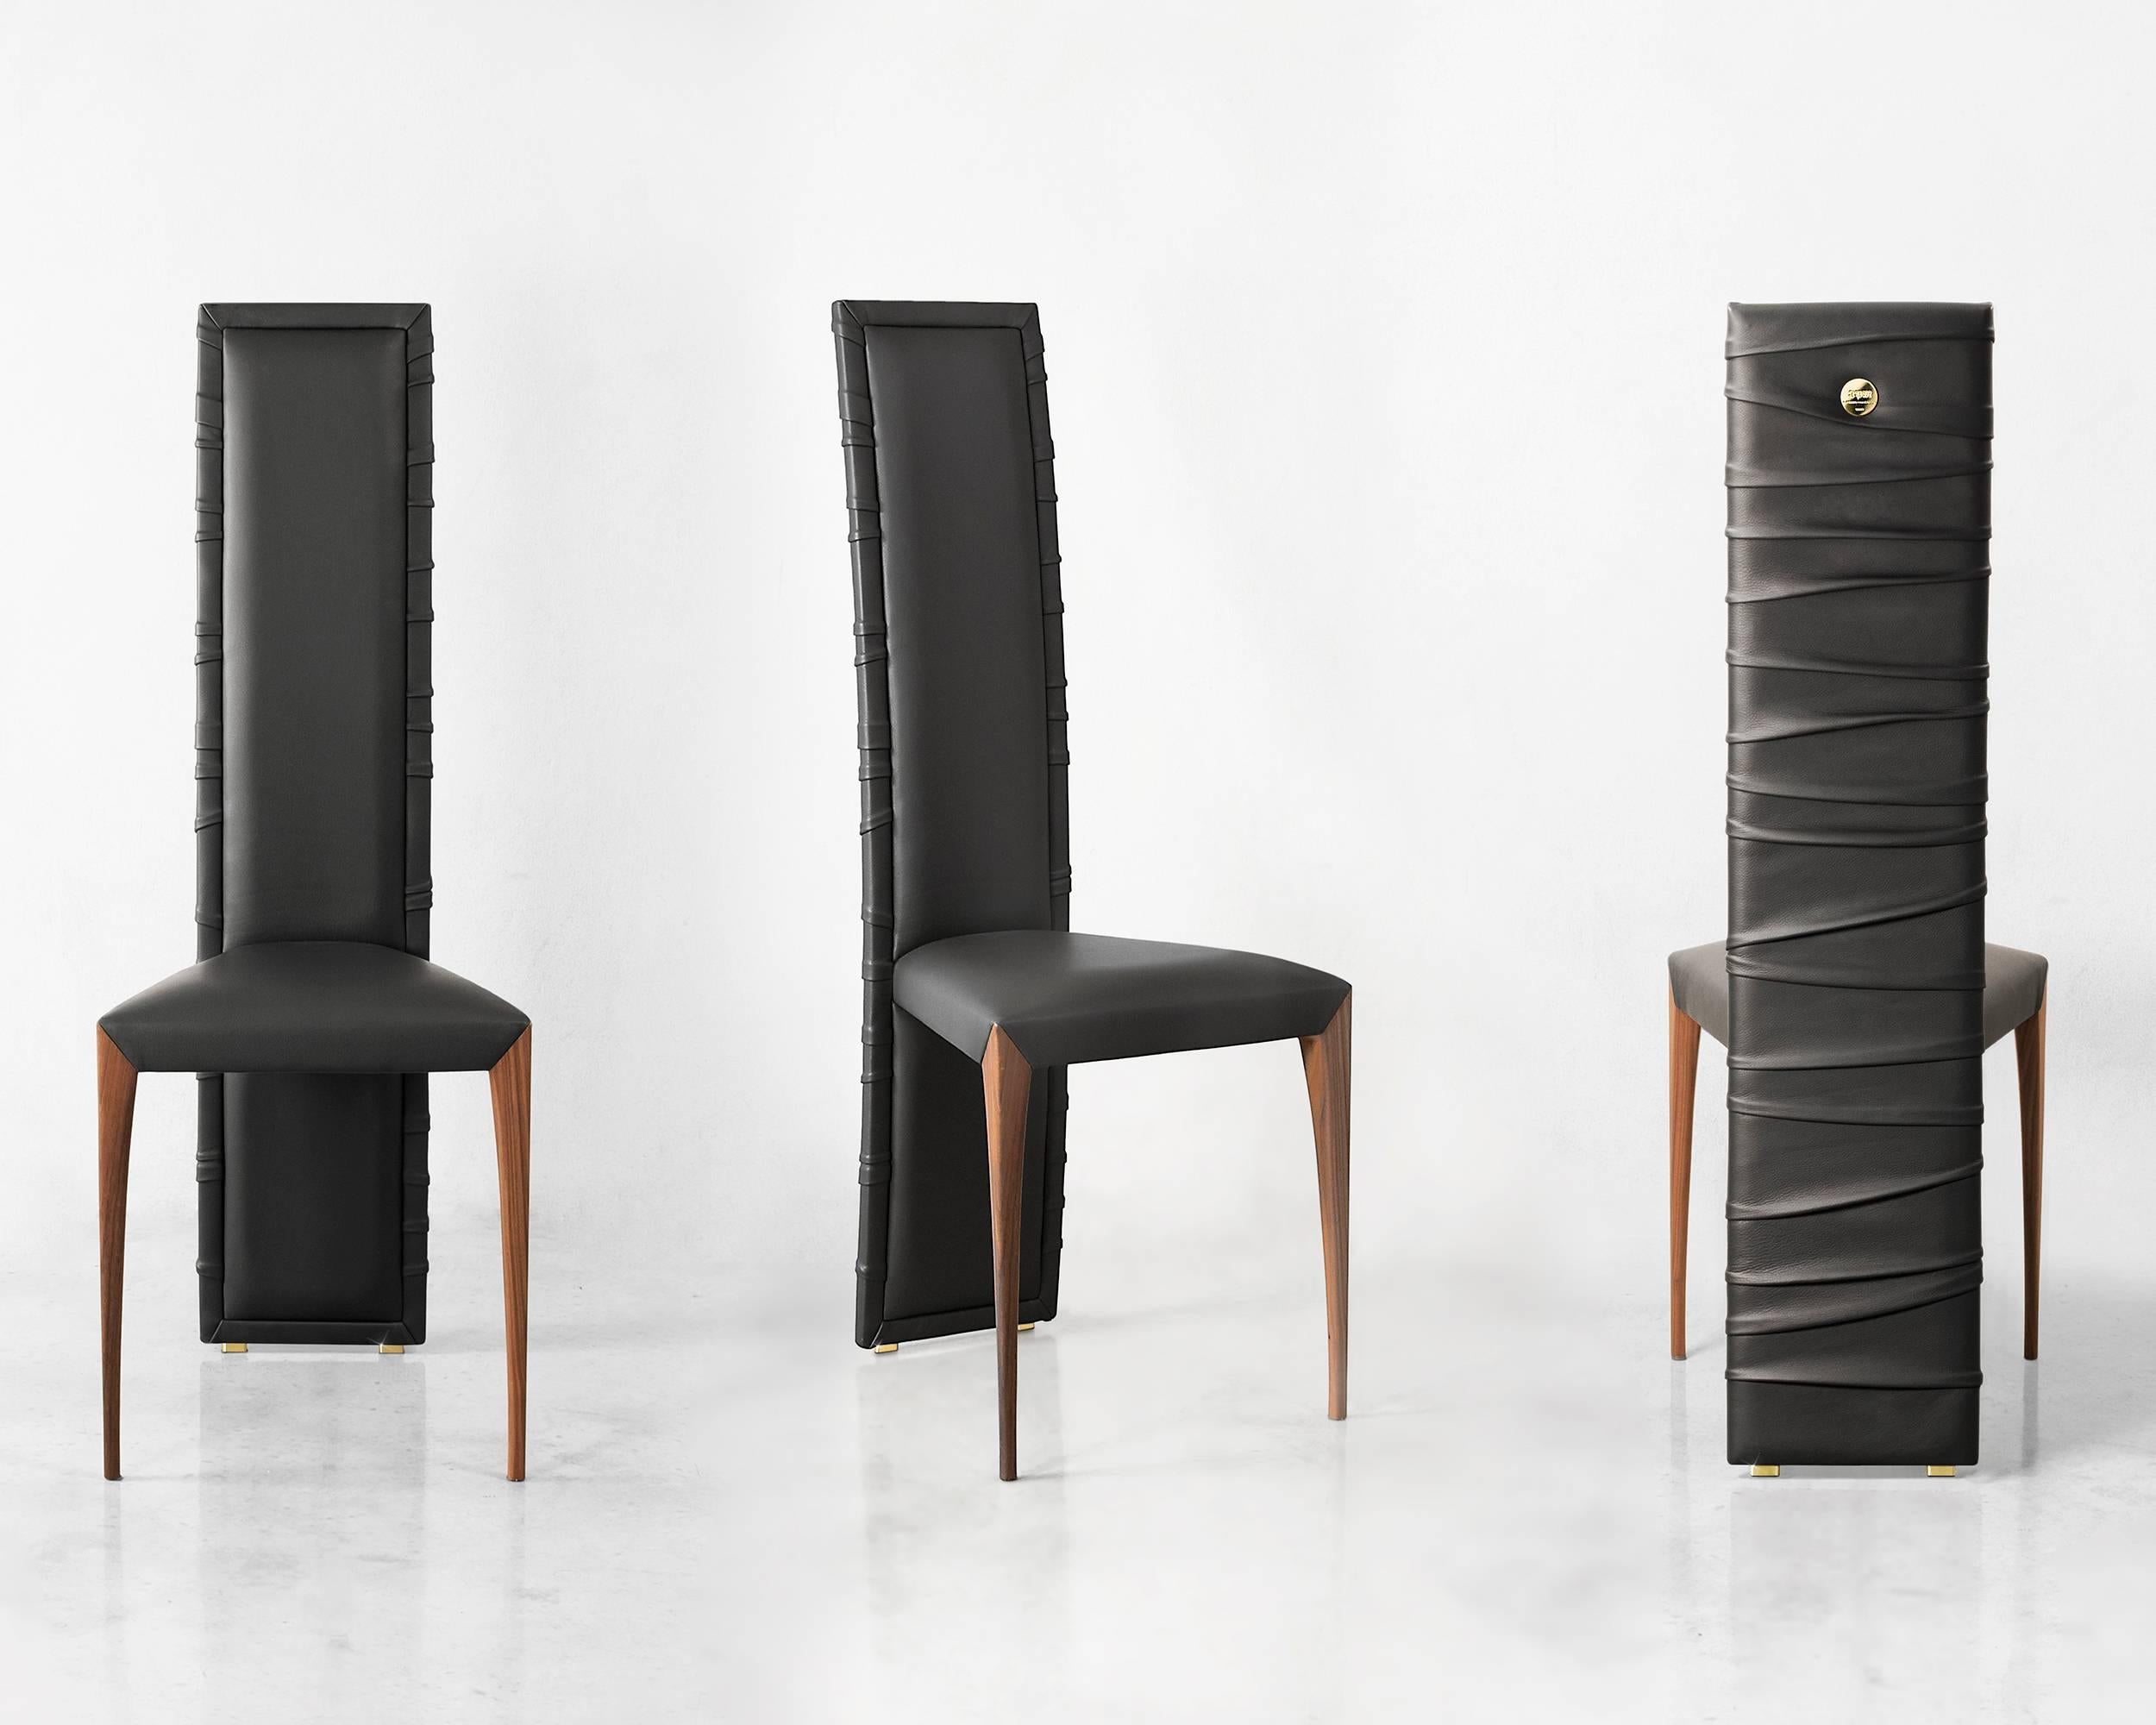 Geschwungene Falten umhüllen die elegante Struktur des Il Pezzo 7 Chair. Von Meisterhand mit hochwertigem Leder oder Samt gepolstert, verfügt er über eine weiche Rückenlehne, die von seinen anmutigen Falten umhüllt wird. Die Sitzfläche besteht aus